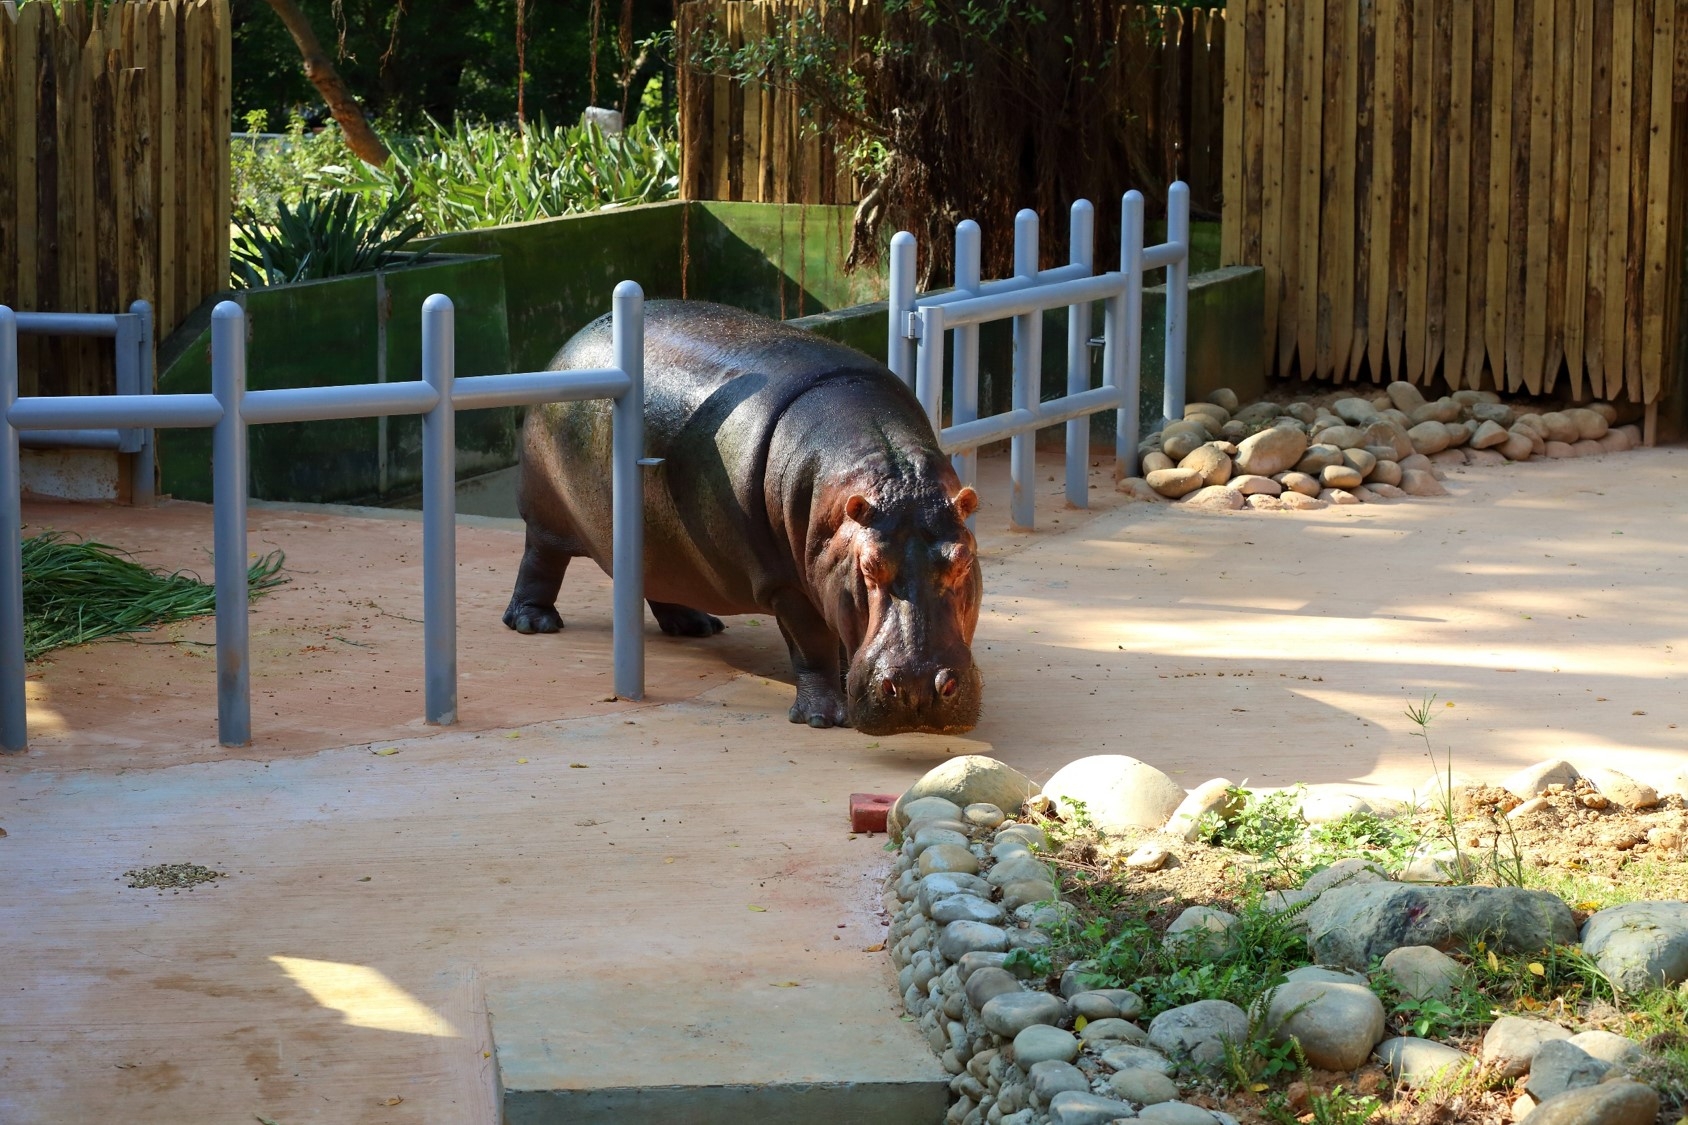 科技城市裡的生態綠島— 重生的新竹動物園